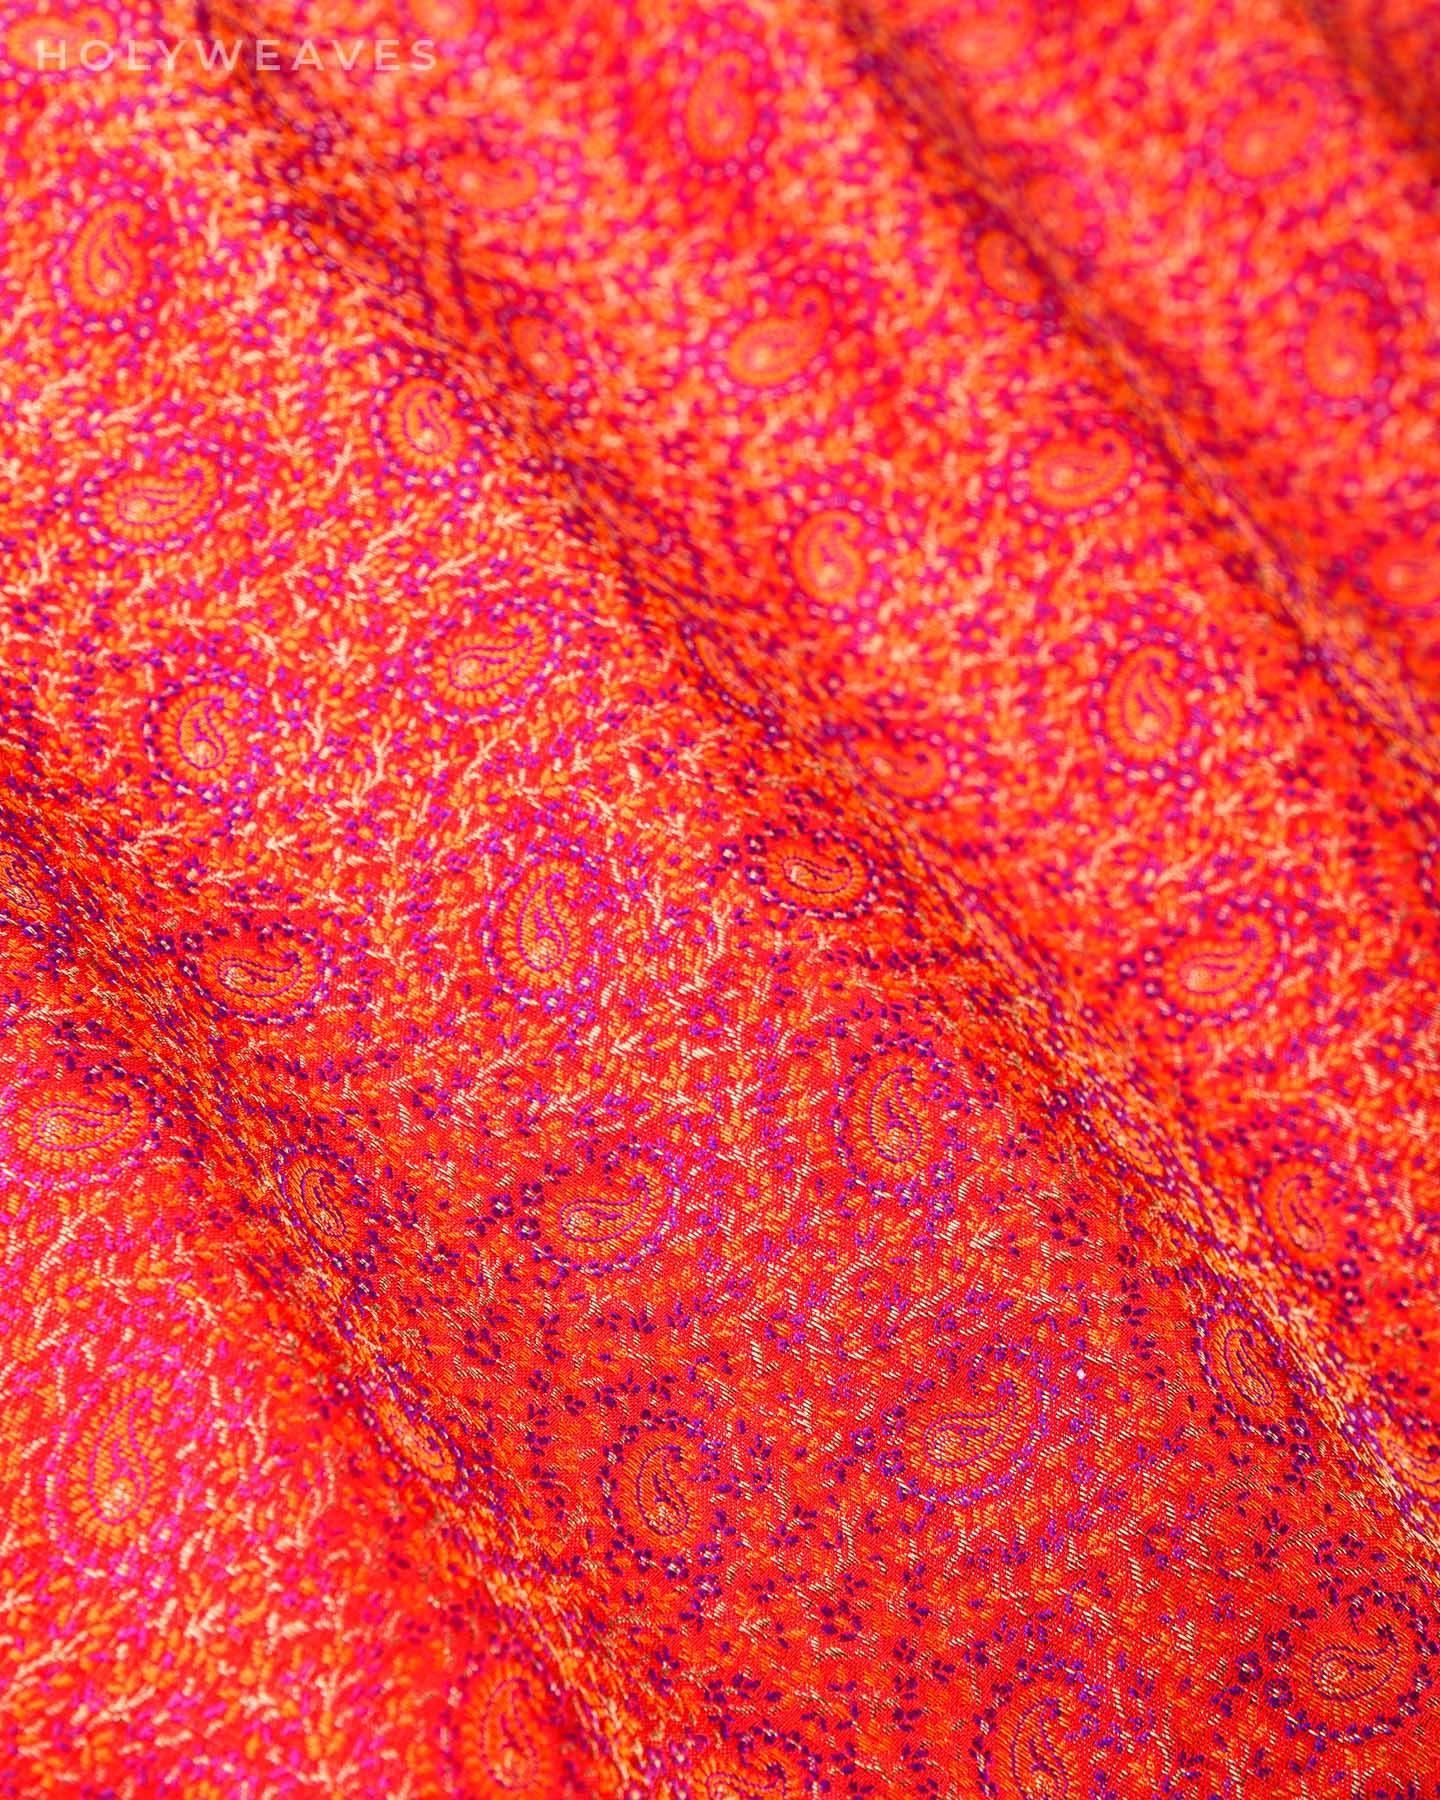 Red Banarasi Jamawar Handwoven Katan Silk Fabric with Zari Accents - By HolyWeaves, Benares